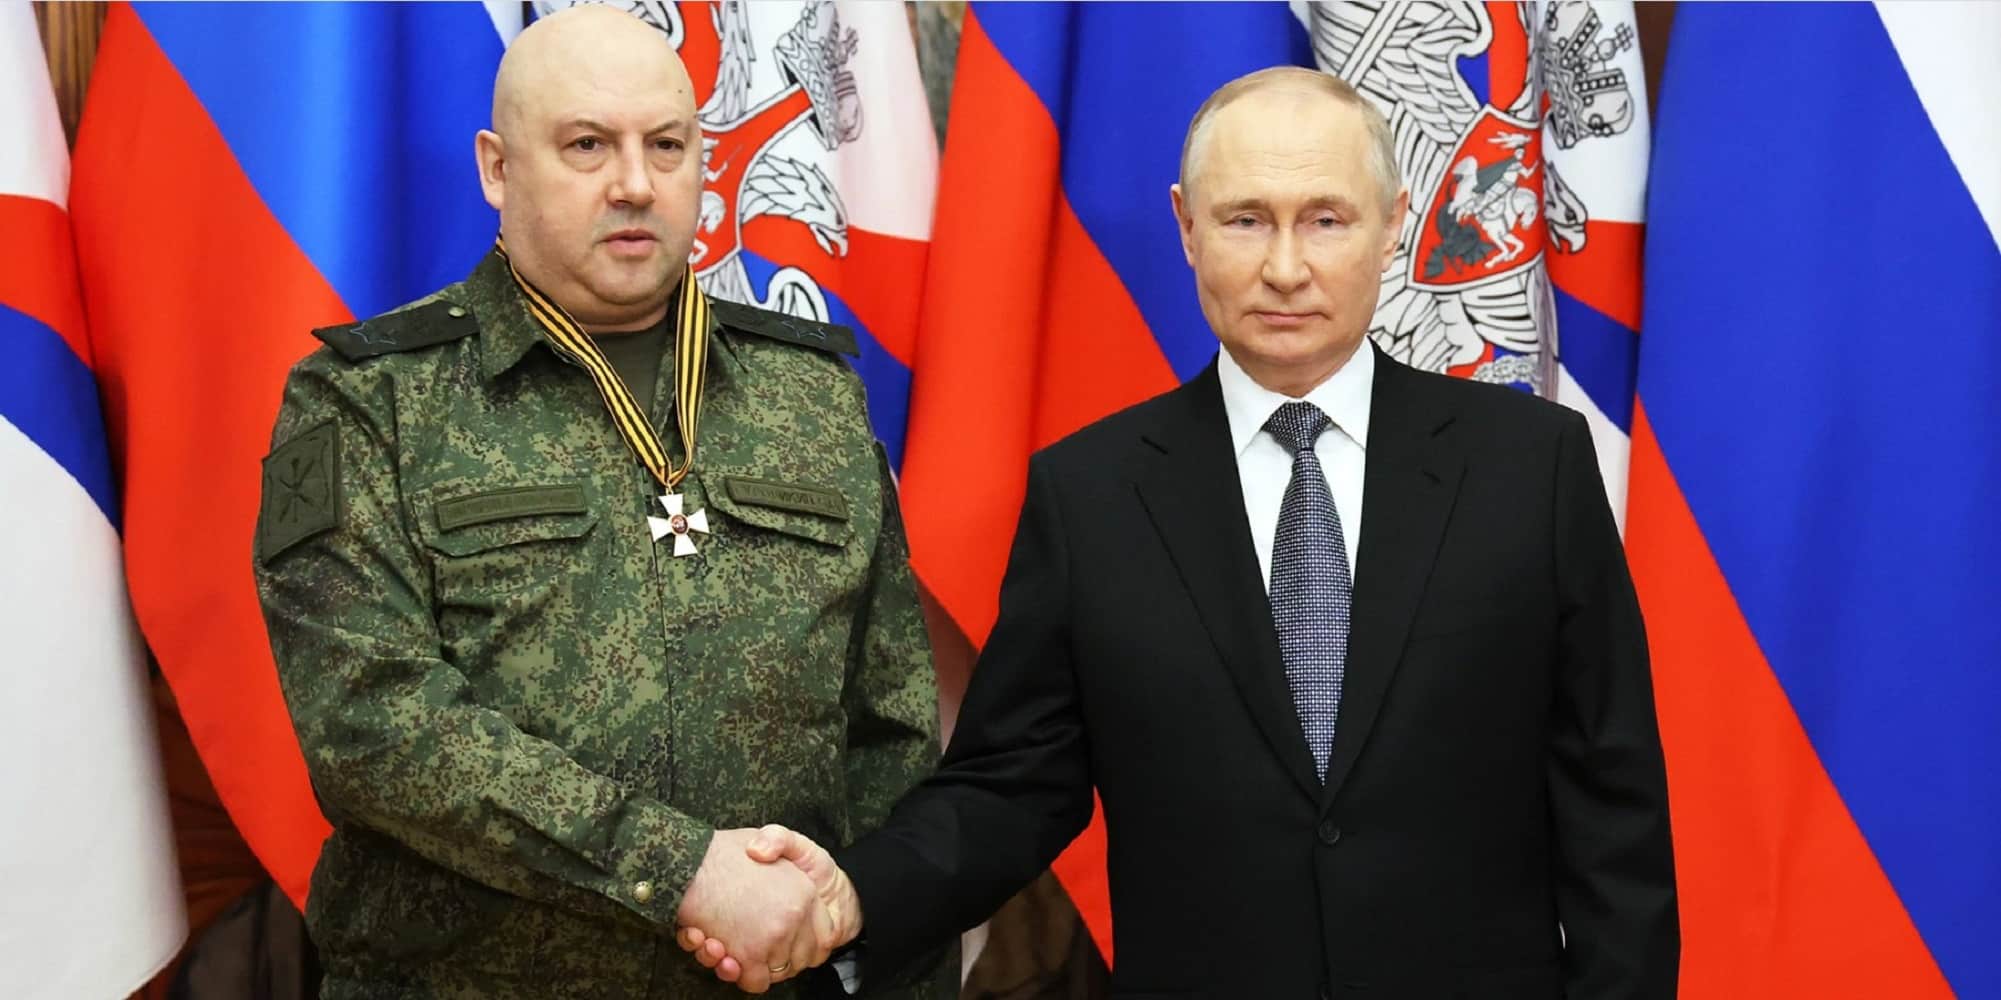 Ο Σεργκέι Σουροβίκιν με τον Βλαντιμίρ Πούτιν